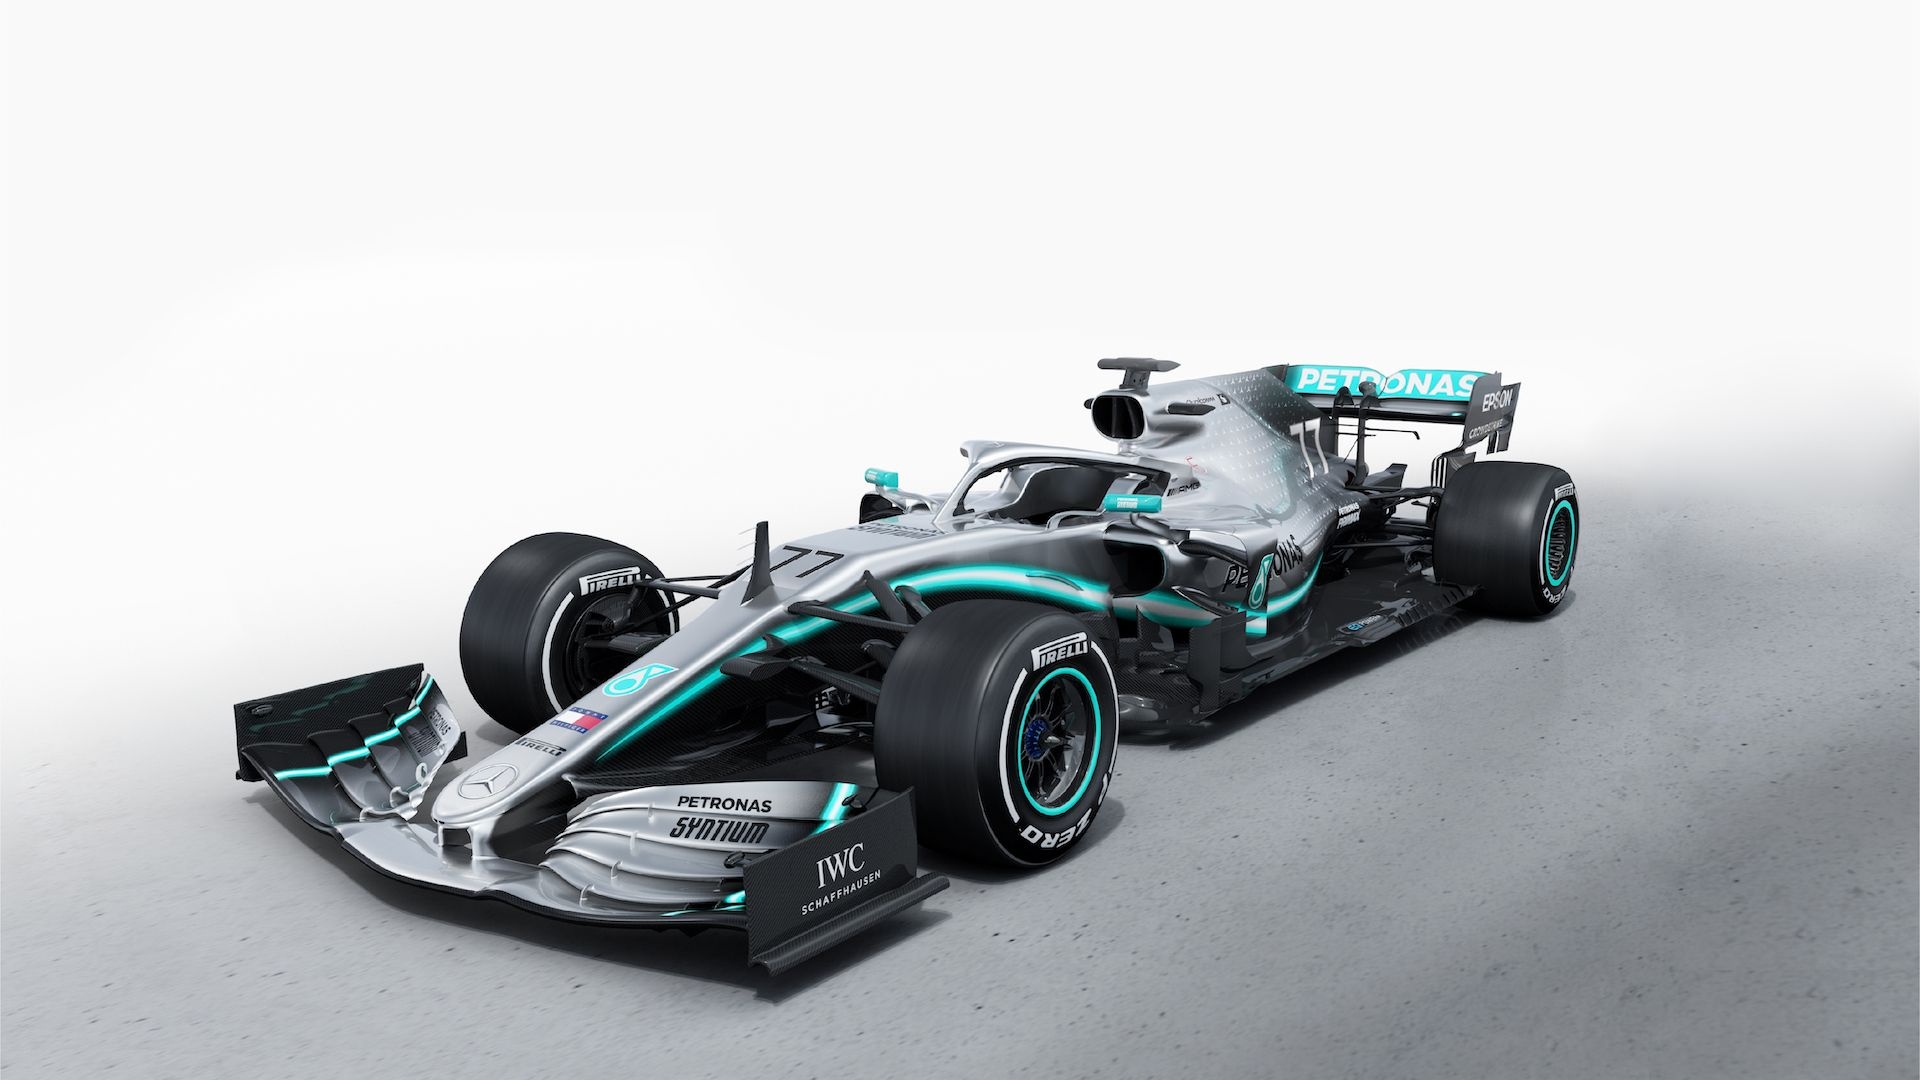 2019 Mercedes-AMG W10 Formula 1 race car